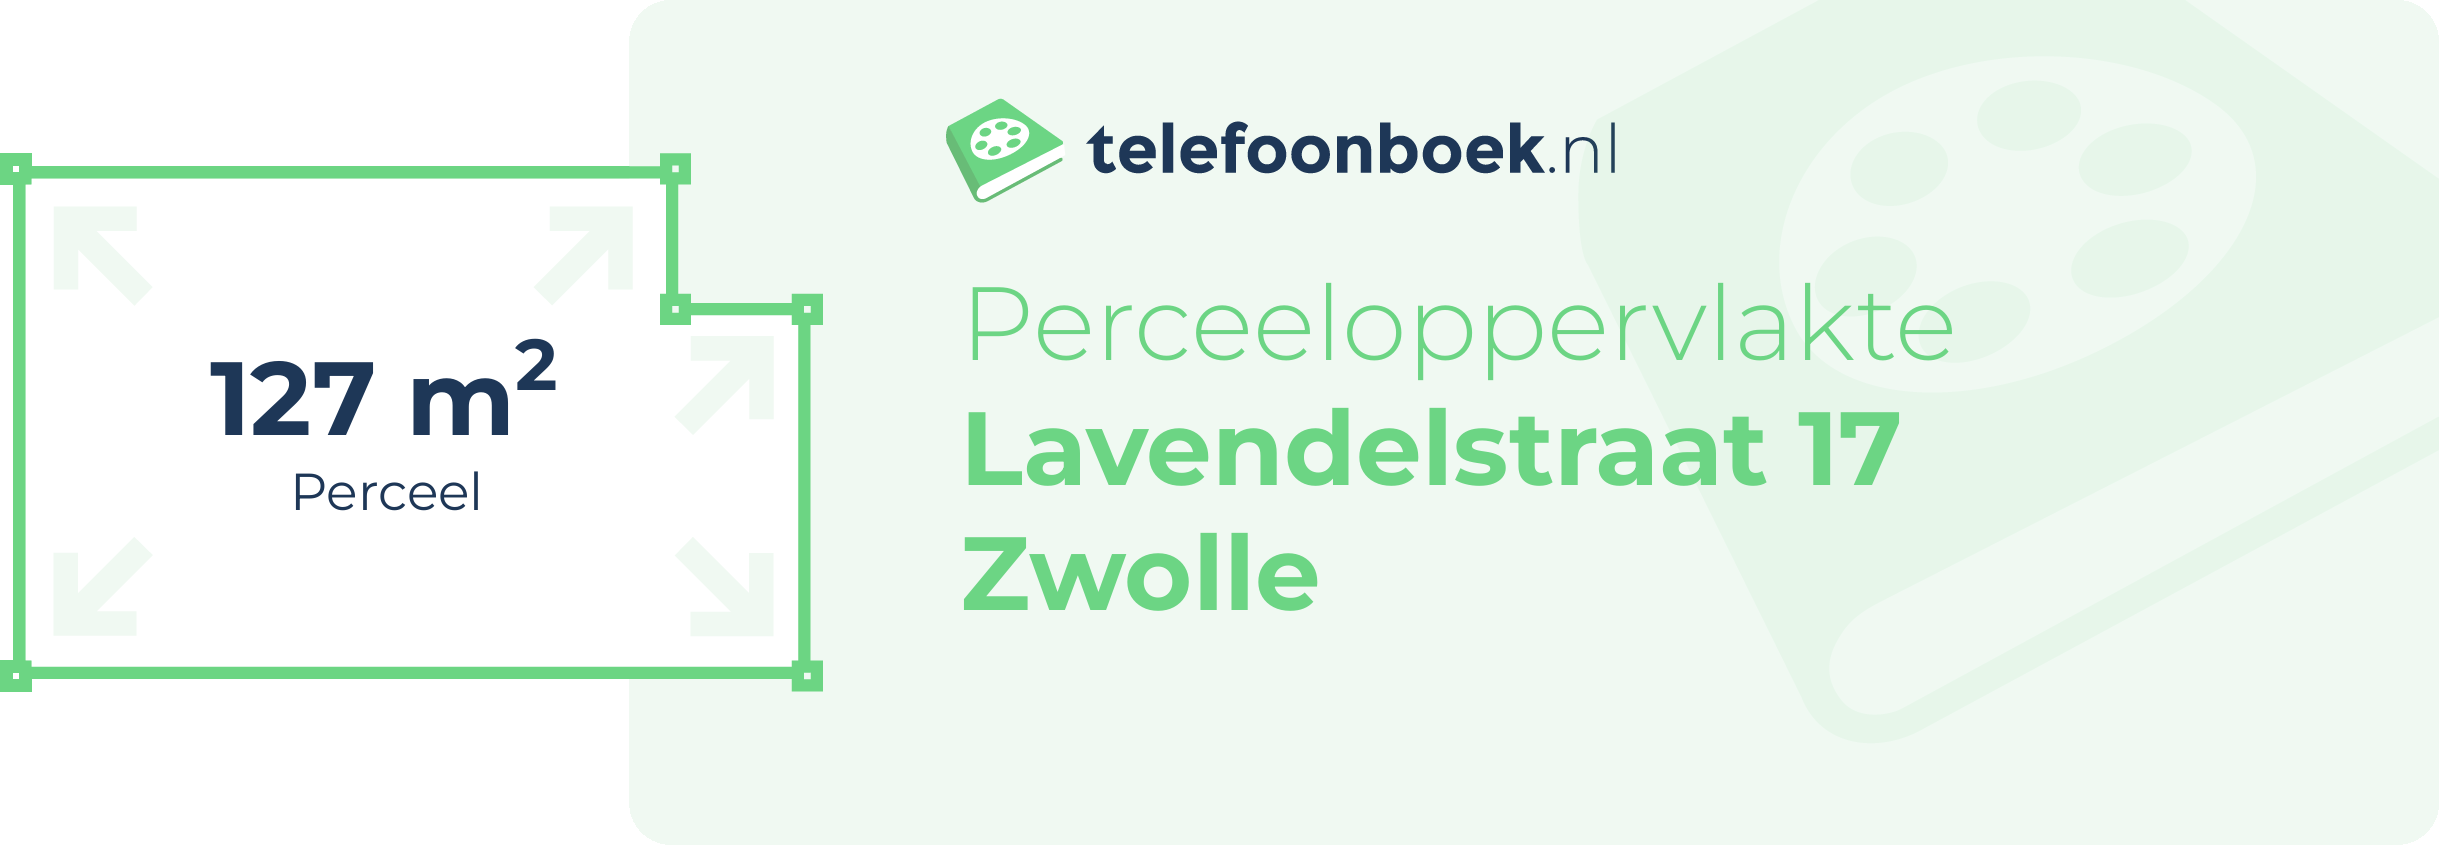 Perceeloppervlakte Lavendelstraat 17 Zwolle